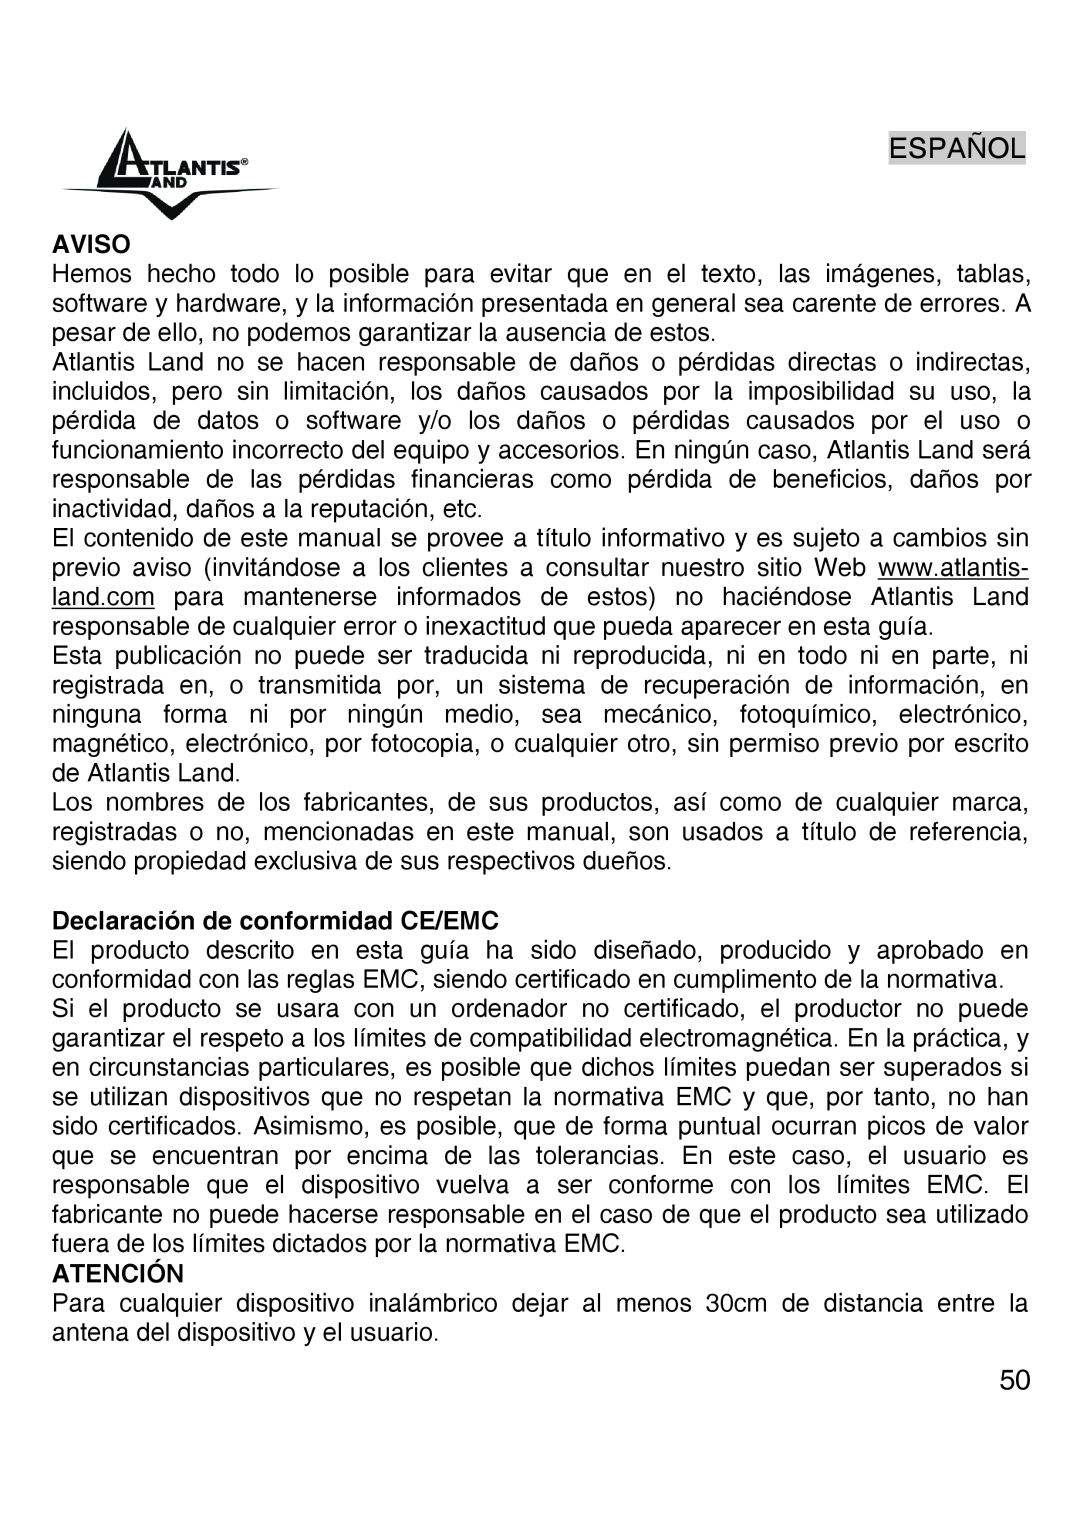 Atlantis Land A02-UP-W54 quick start Español, Aviso, Declaración de conformidad CE/EMC, Atención 